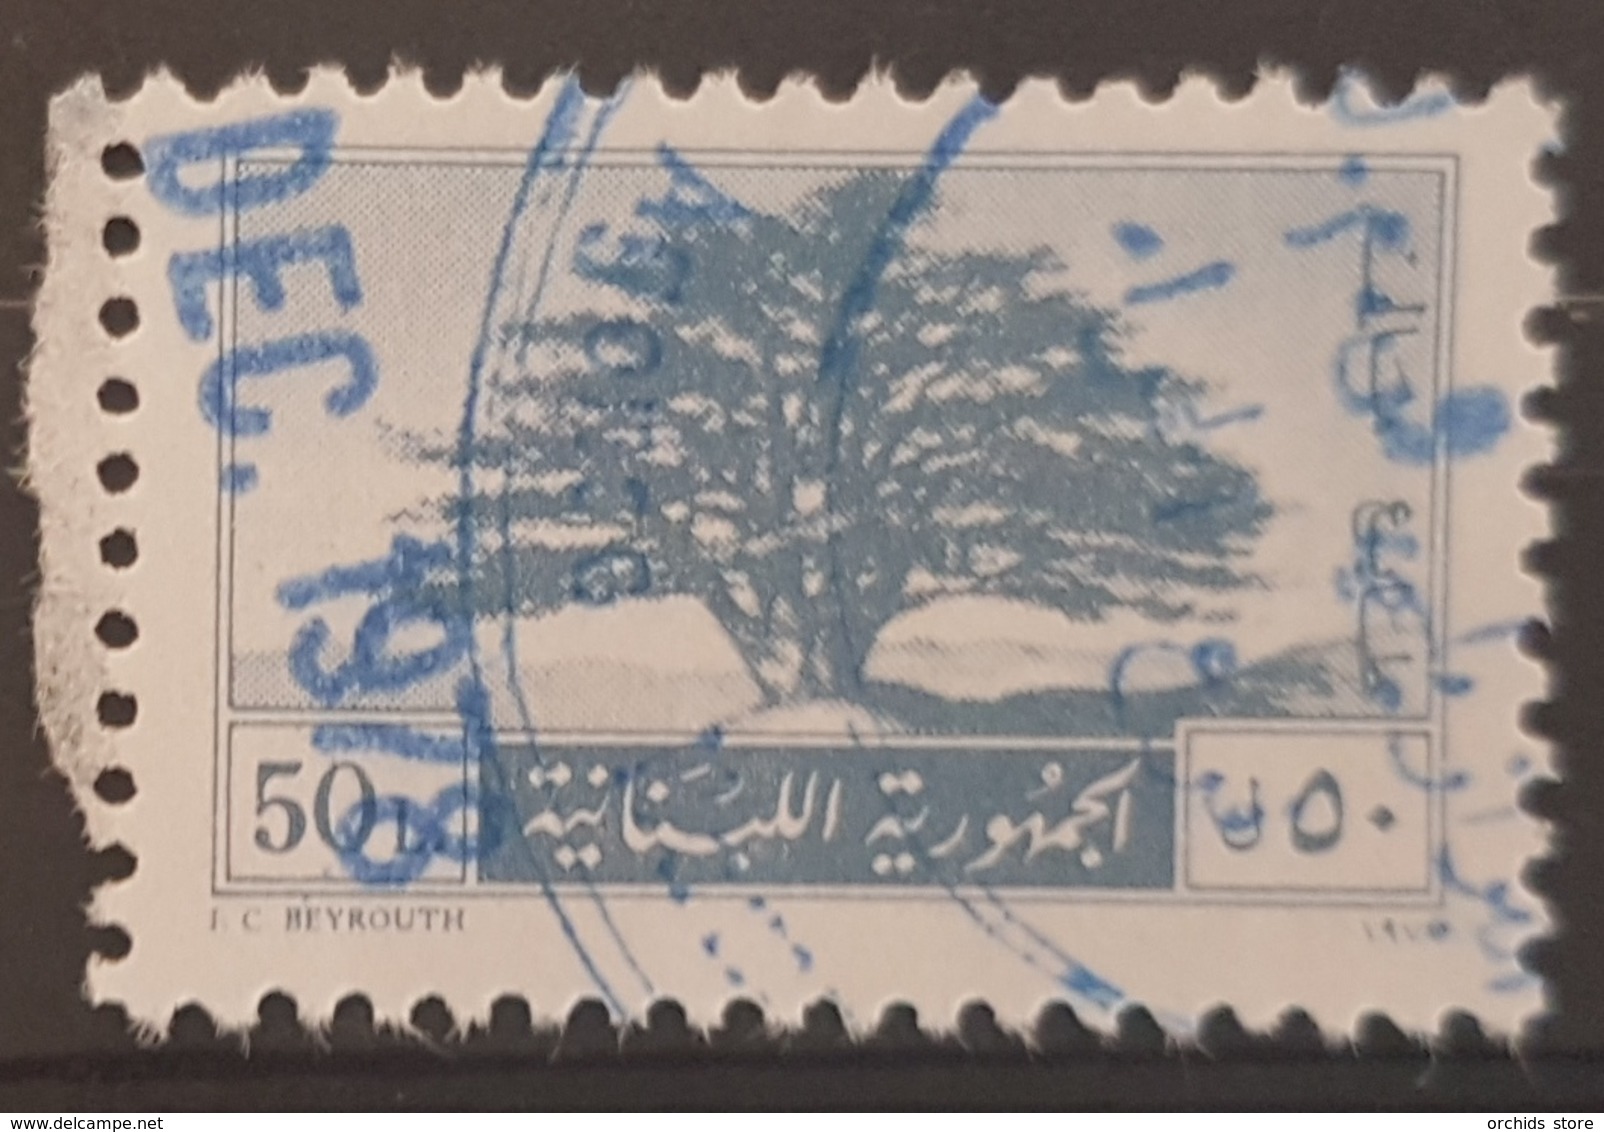 Lebanon 1977 50L Cedar Tree - Fiscal Revenue Stamp - Lebanon